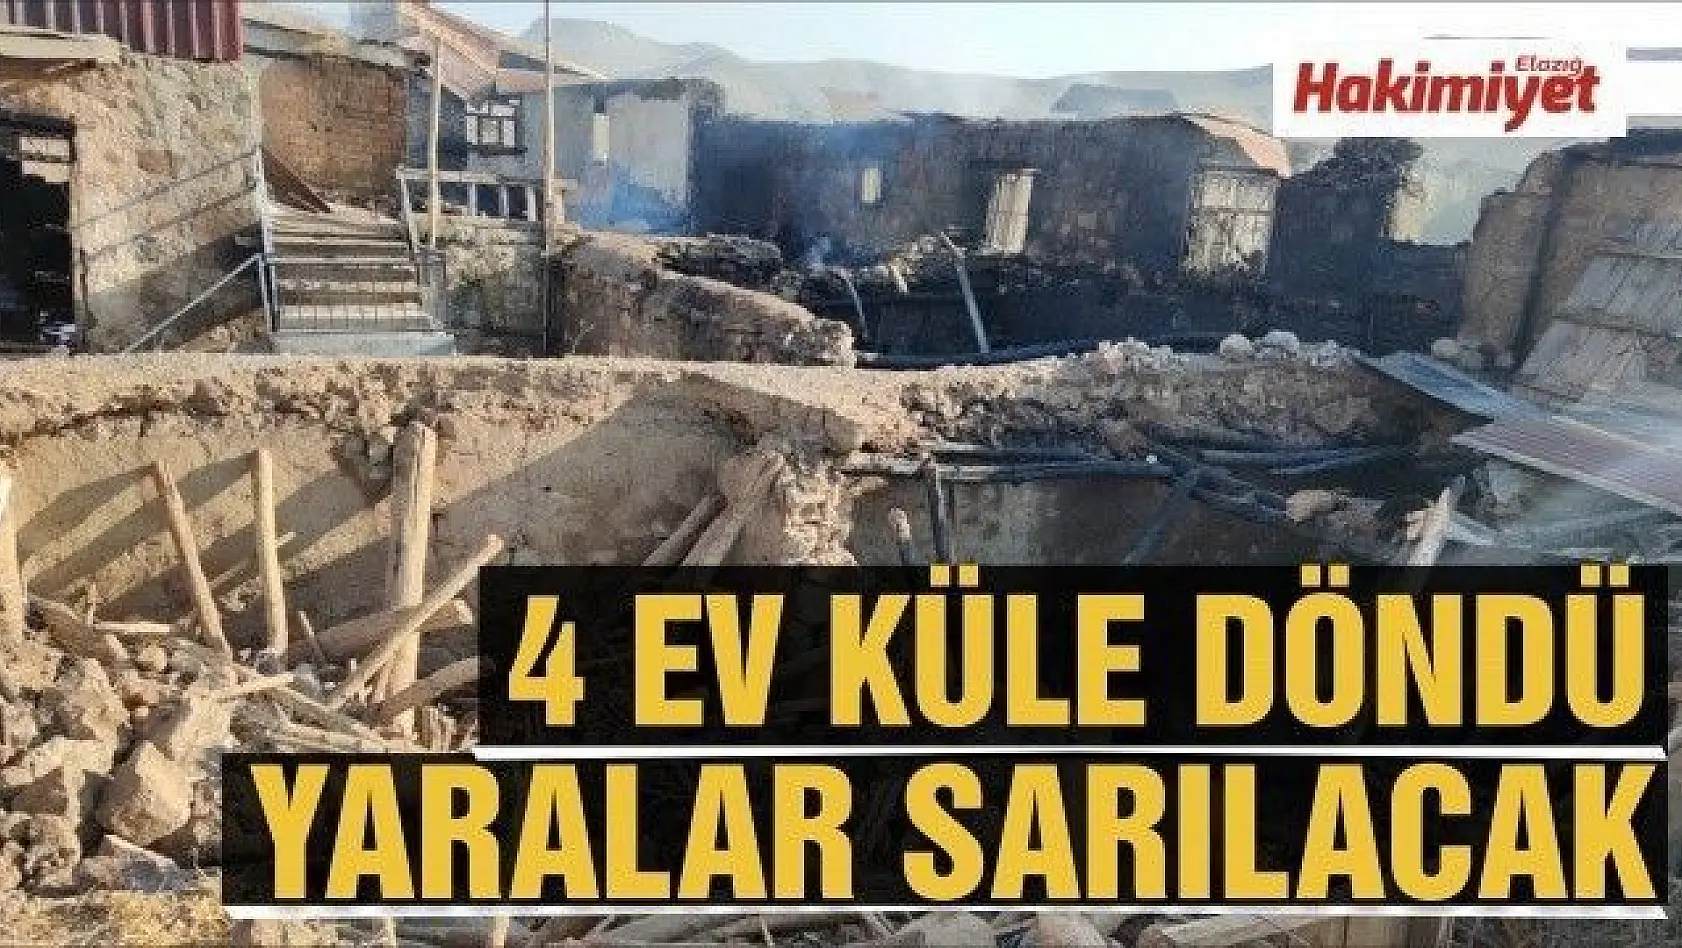 4 ev yandı, yaraların sarılması için çalışma başlatıldı